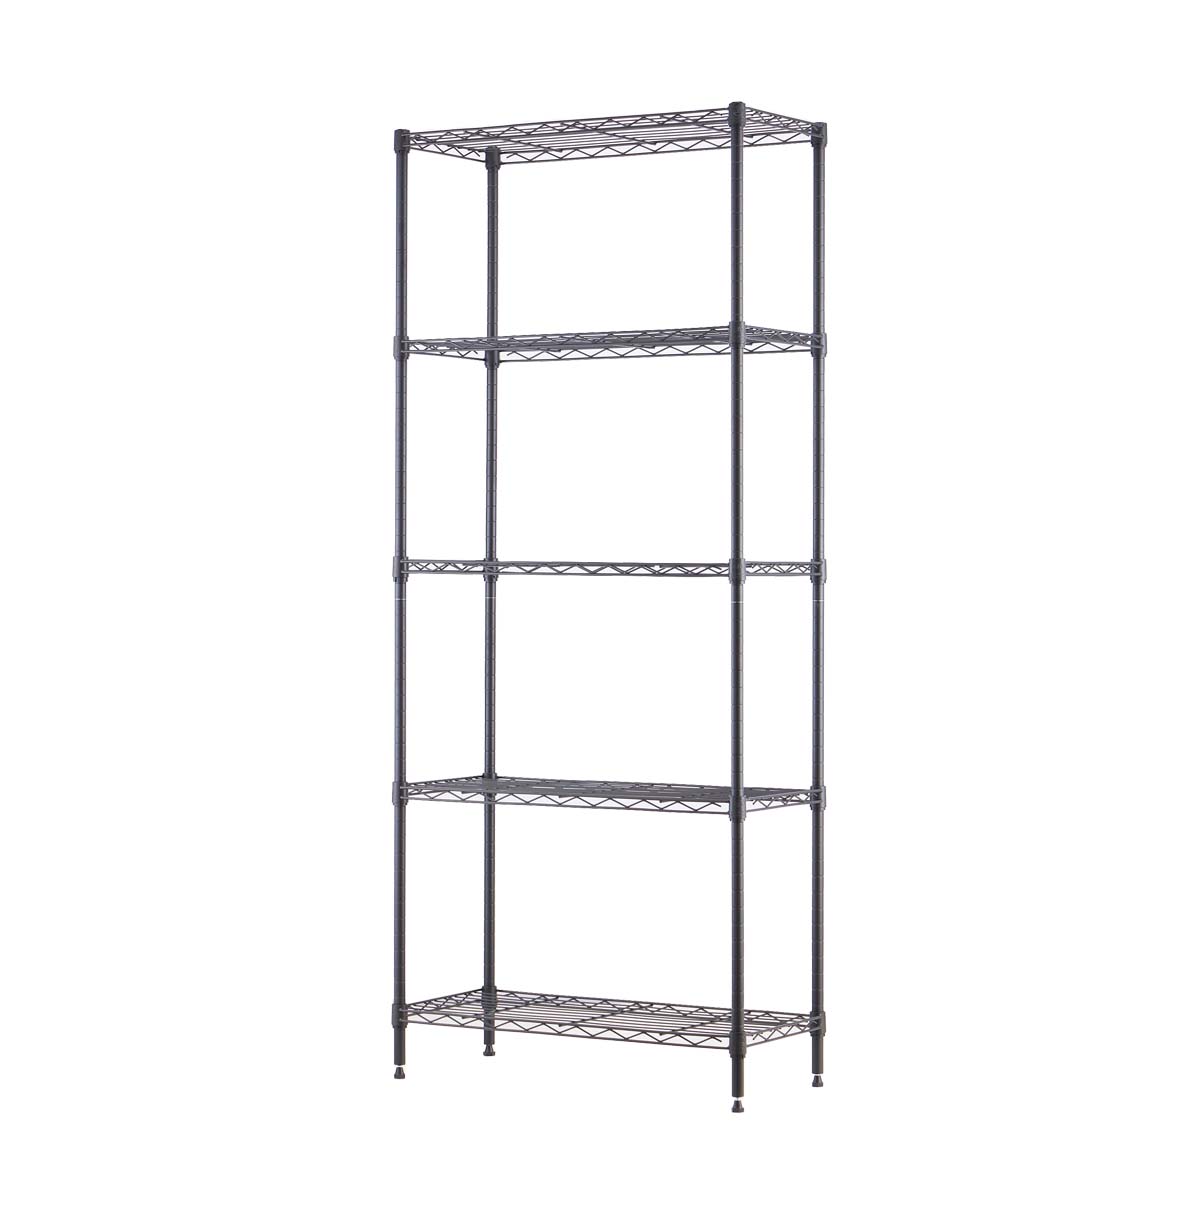 5-shelf wire storage rack price